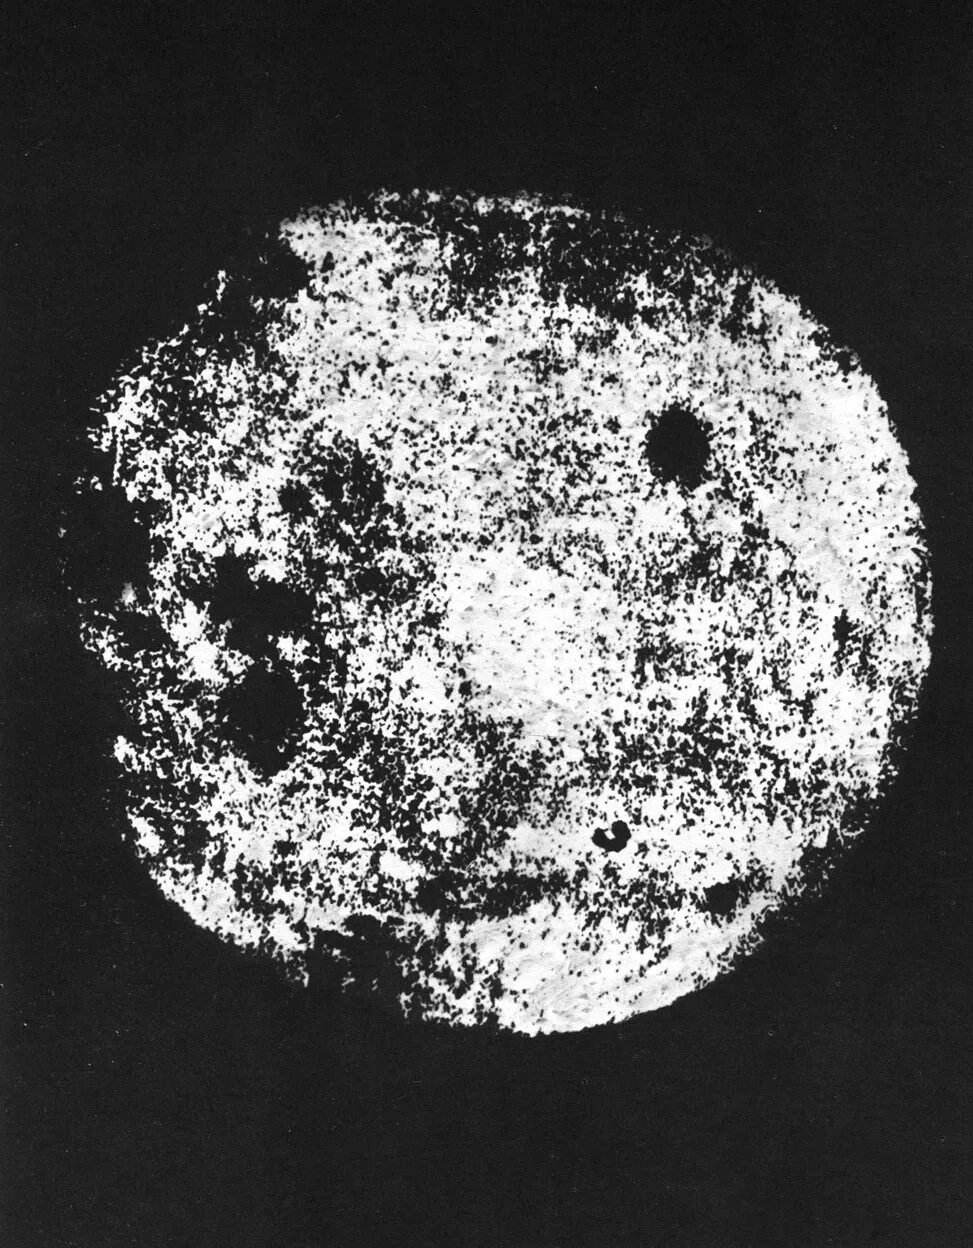 Видео обратной стороны луны. Обратная сторона Луны 1959. Снимки Луны 1959. Луна 3 снимки обратной стороны Луны. Снимок обратной стороны Луны 1959.